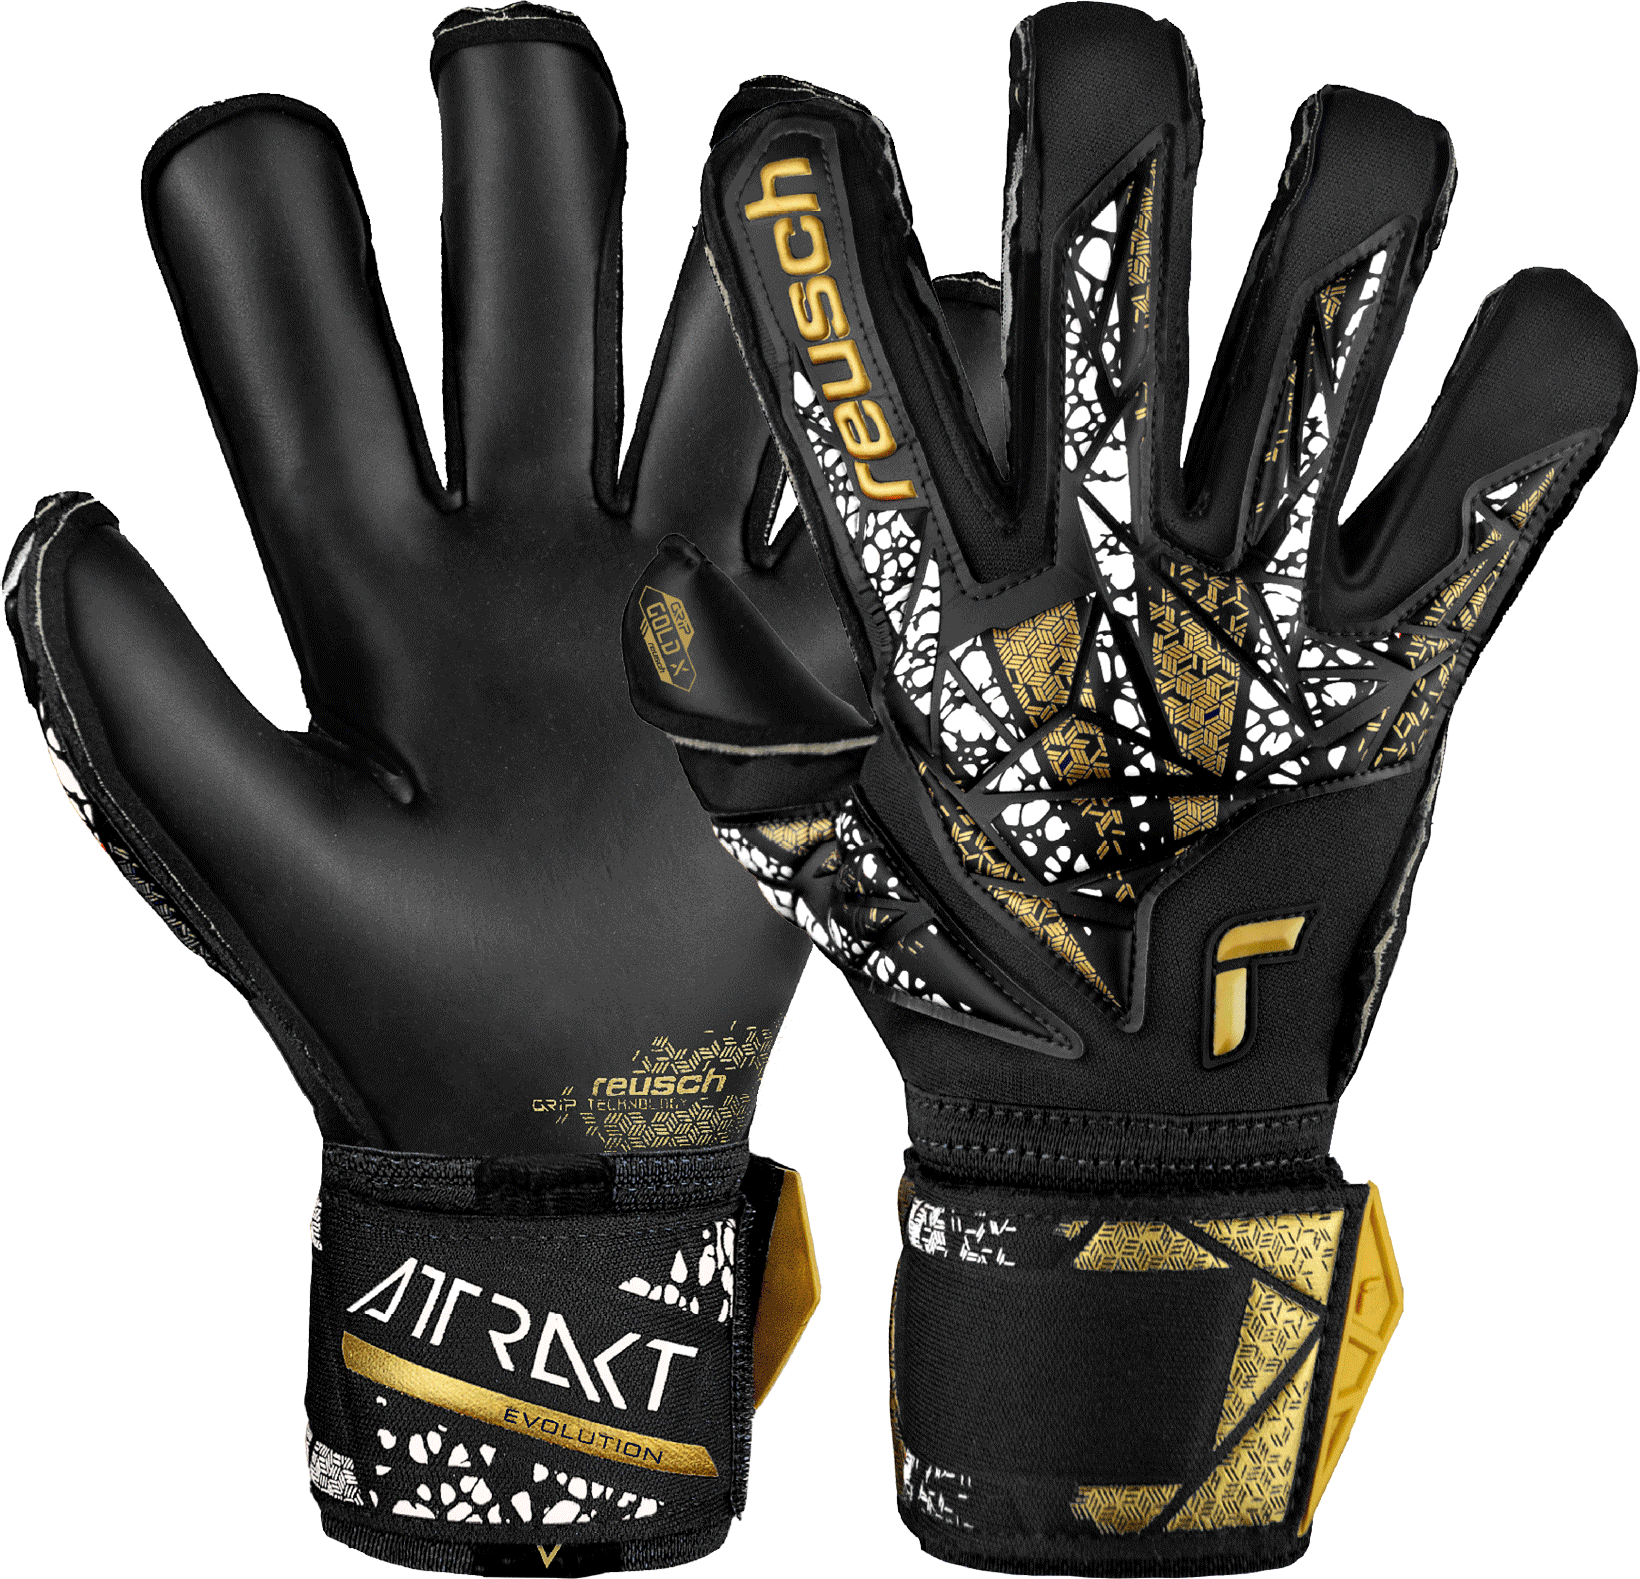 Reusch Attrakt Gold X Evolution Cut Finger Support Goalkeeper Gloves Kapuskesztyű